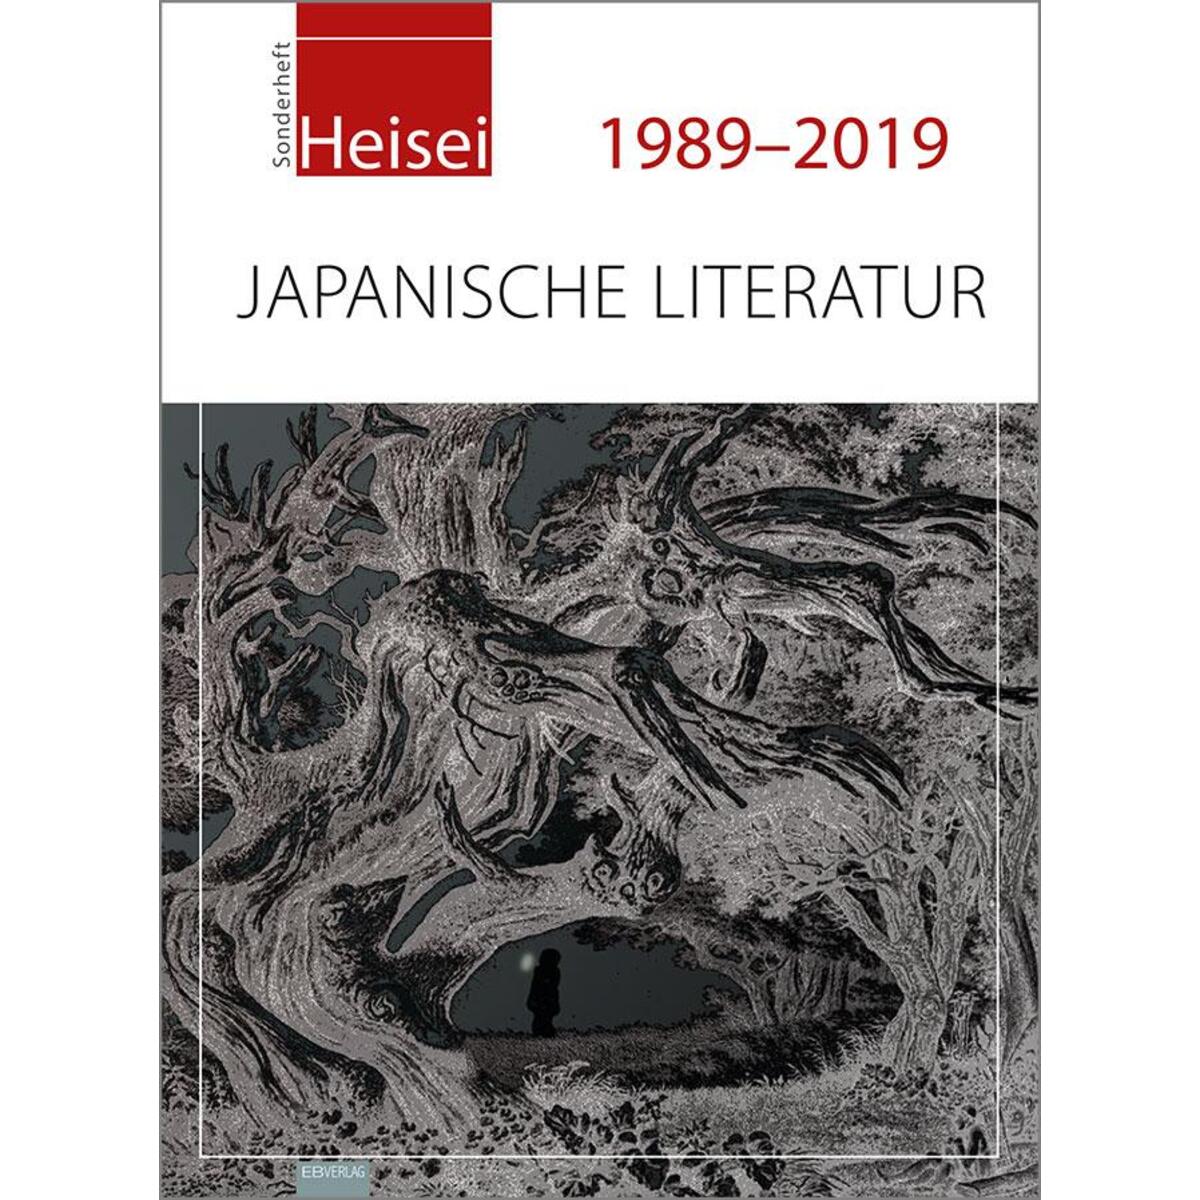 Heisei 1989-2019 von EB-Verlag